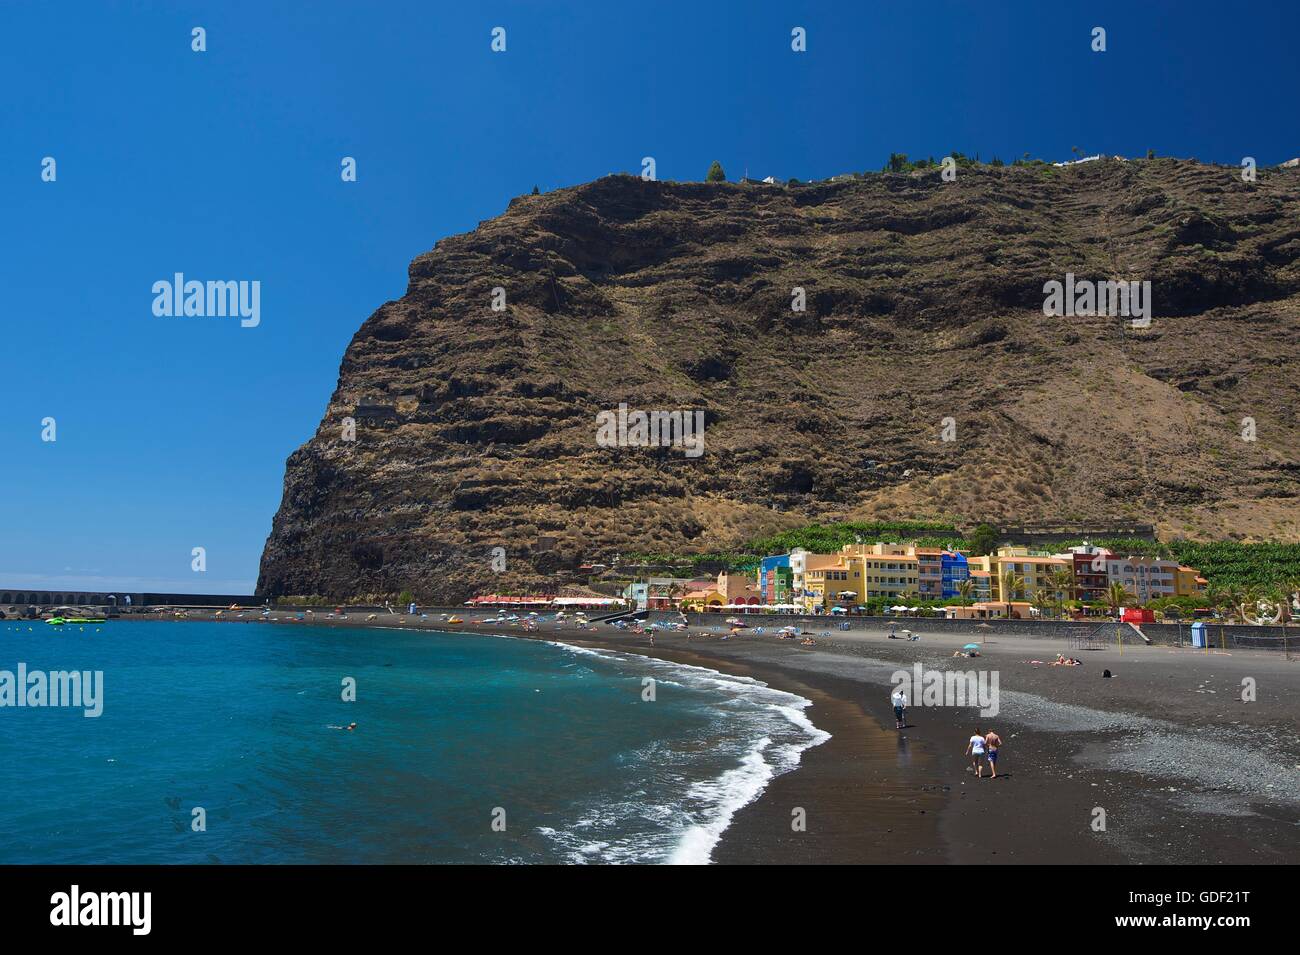 Puerto de Tazacorte, La Palma, Canaries, Spain Stock Photo